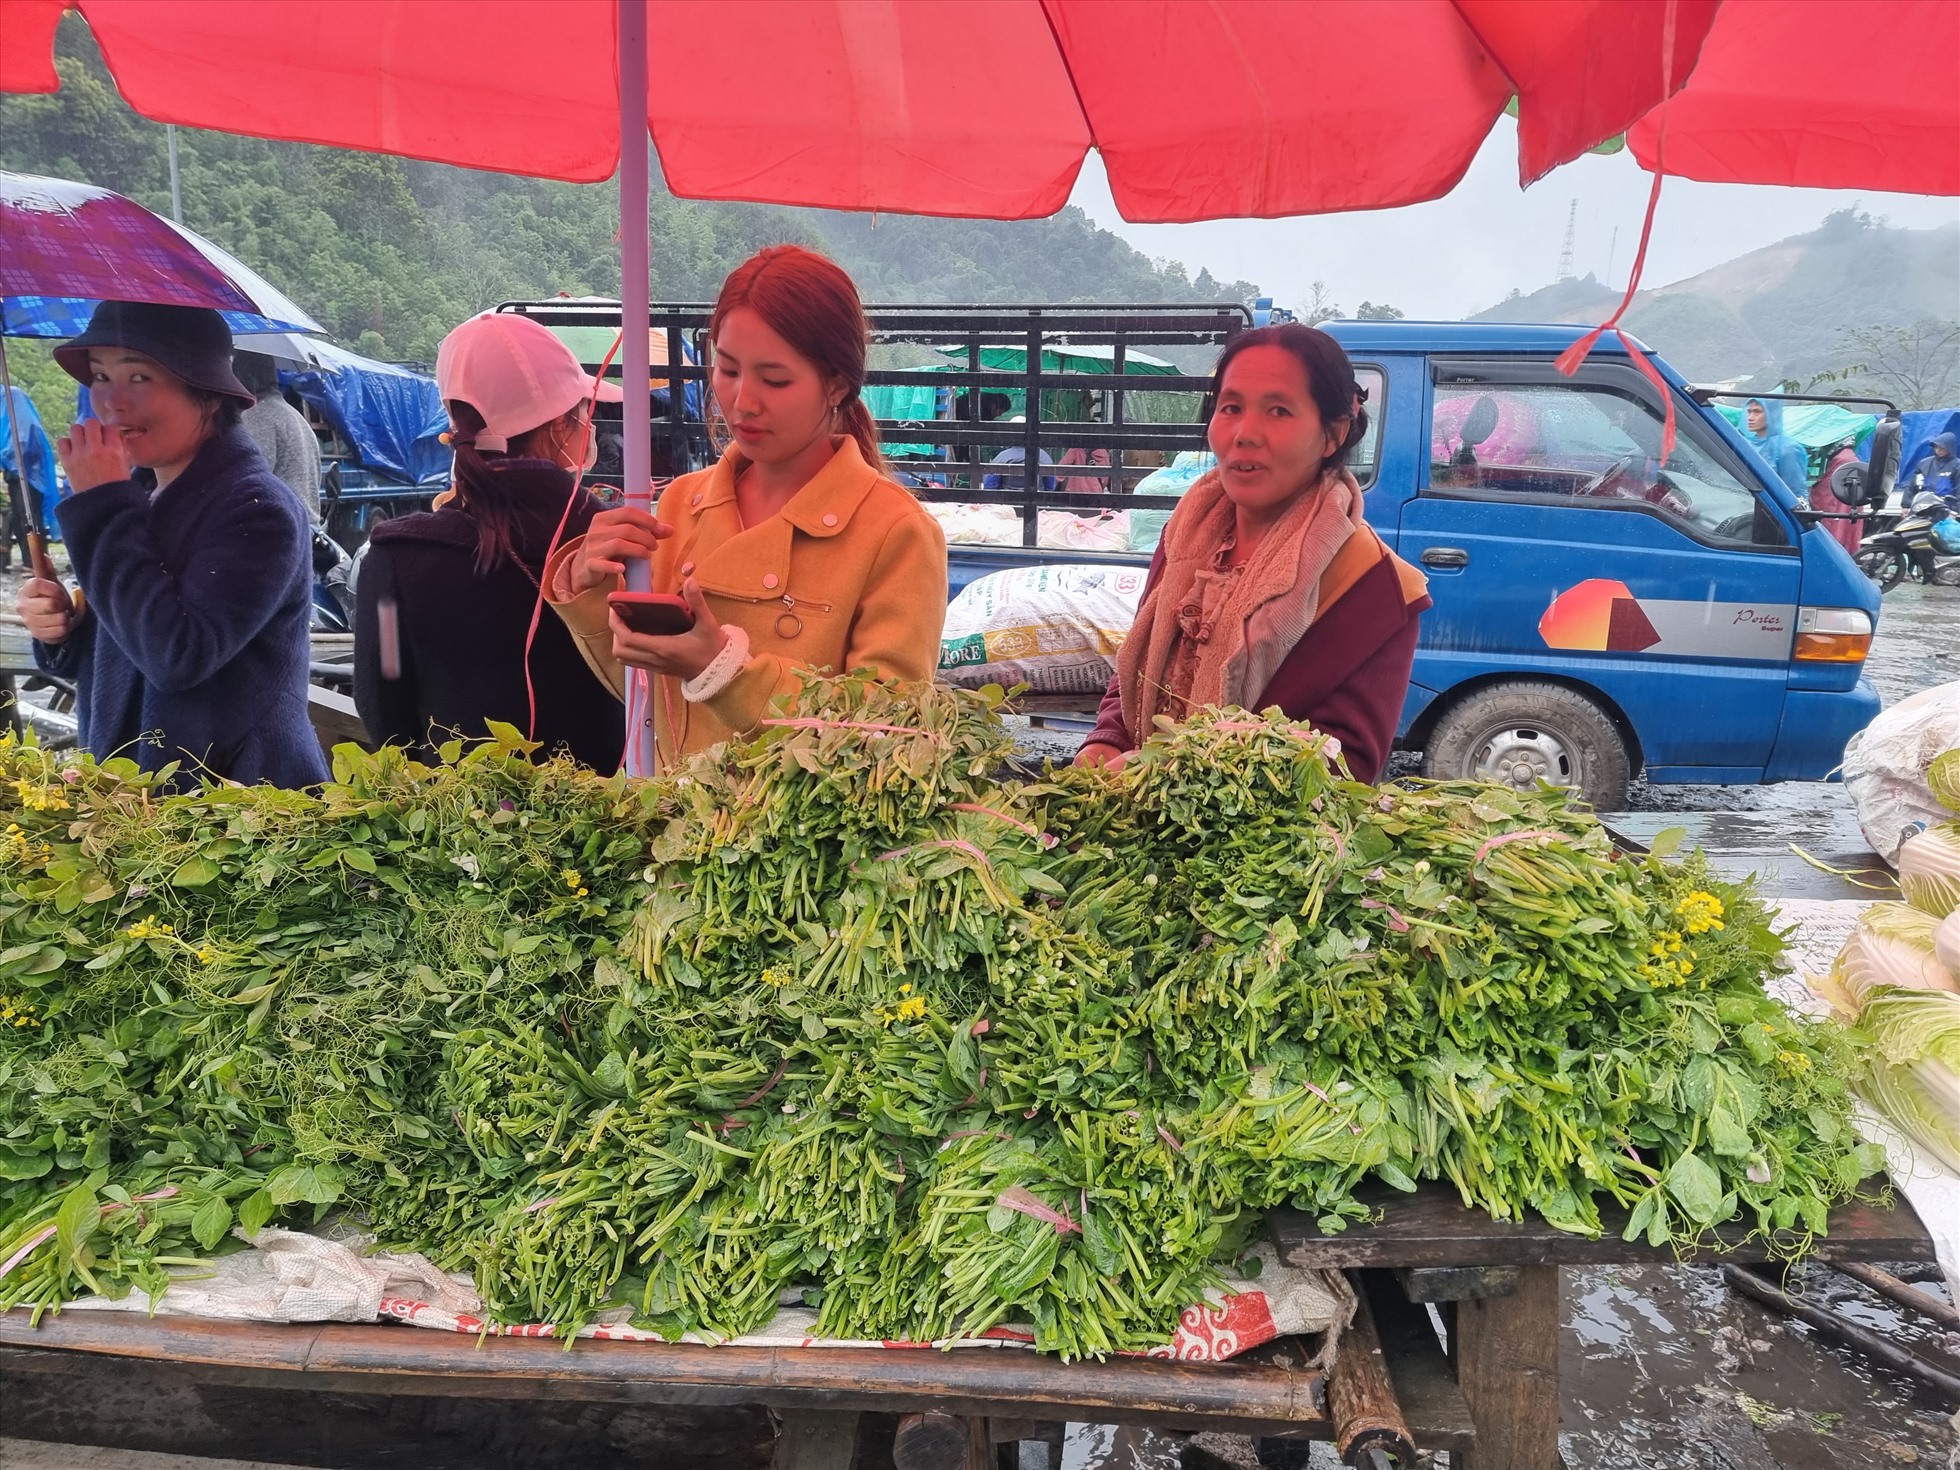 Trước đây chợ họp 1 phiên vào ngày cuối cùng của tháng, tại địa điểm nằm sâu trong lãnh thổ nước bạn Lào, cách biên giới 3 km. Từ năm 2019, chợ đã được mở rộng quy mô và di chuyển địa điểm đến gần cửa khẩu quốc tế Nậm Cắn, sát biên giới Việt Nam - Lào và được tổ chức mở thường xuyên vào sáng chủ nhật hàng tuần.